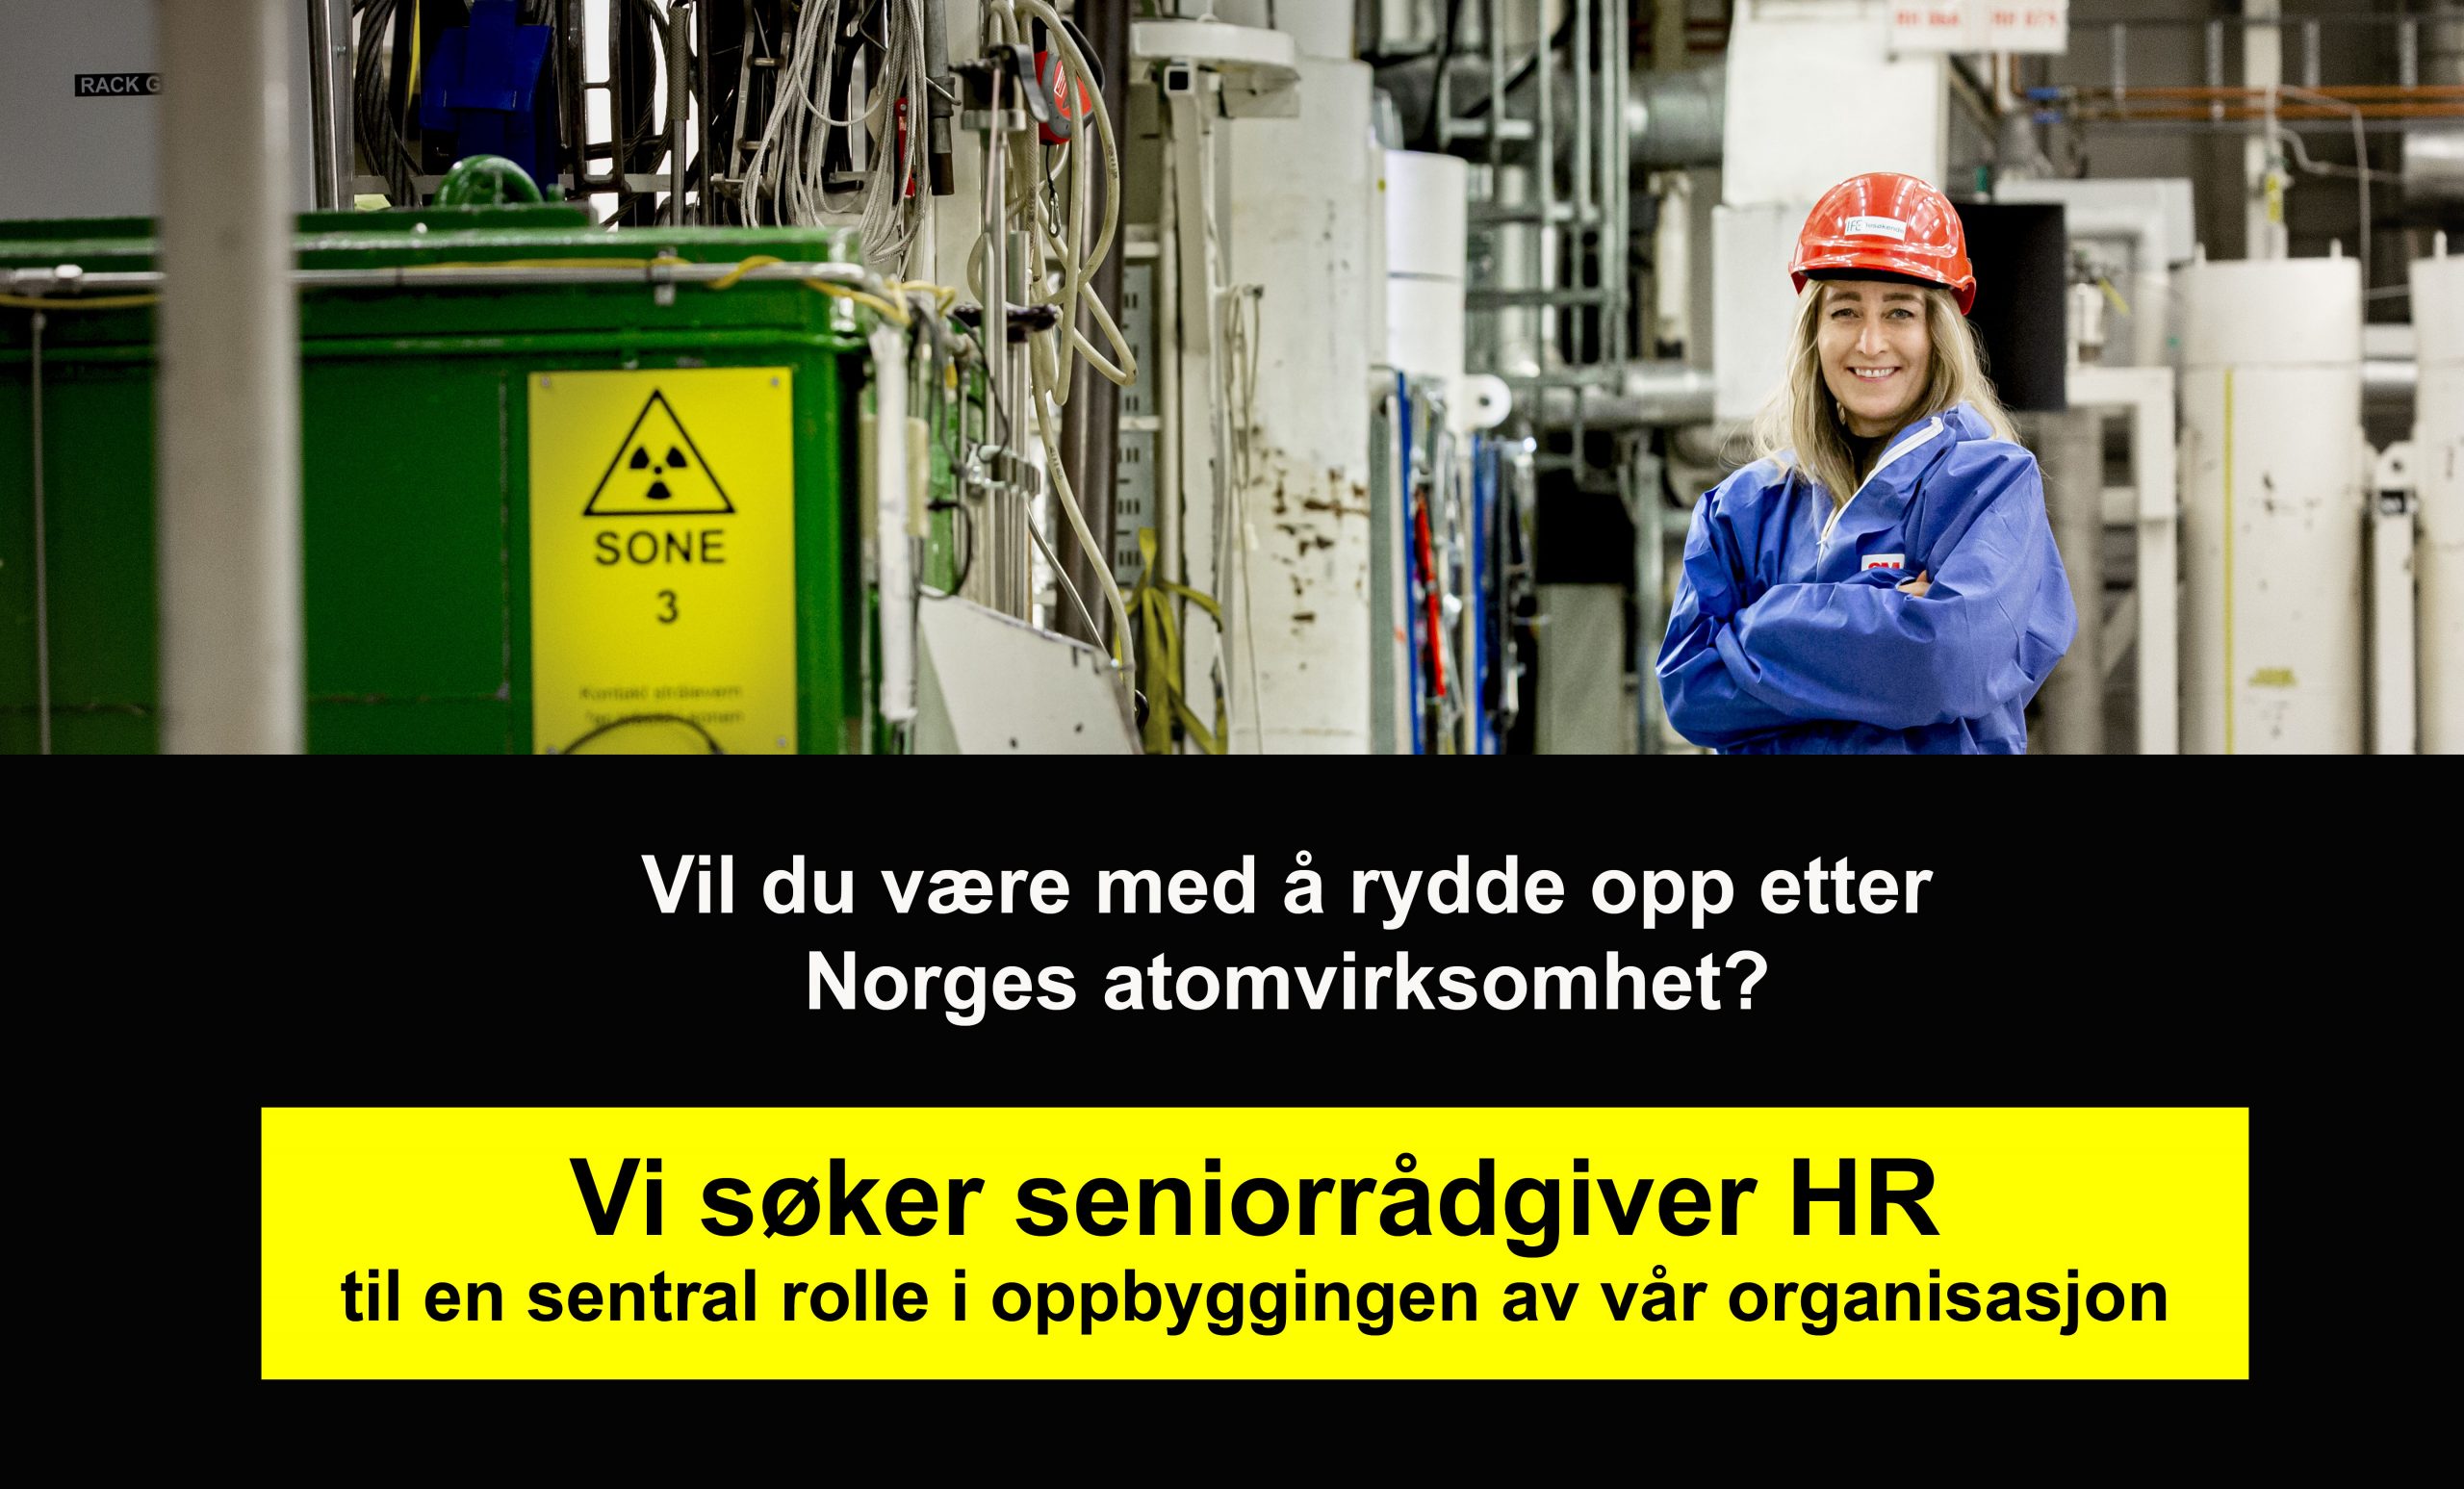 Bilde av dame i verneutstyr som står inne i et atomkraftverk. Under er teksten "vi søker seniorrådgiver HR".